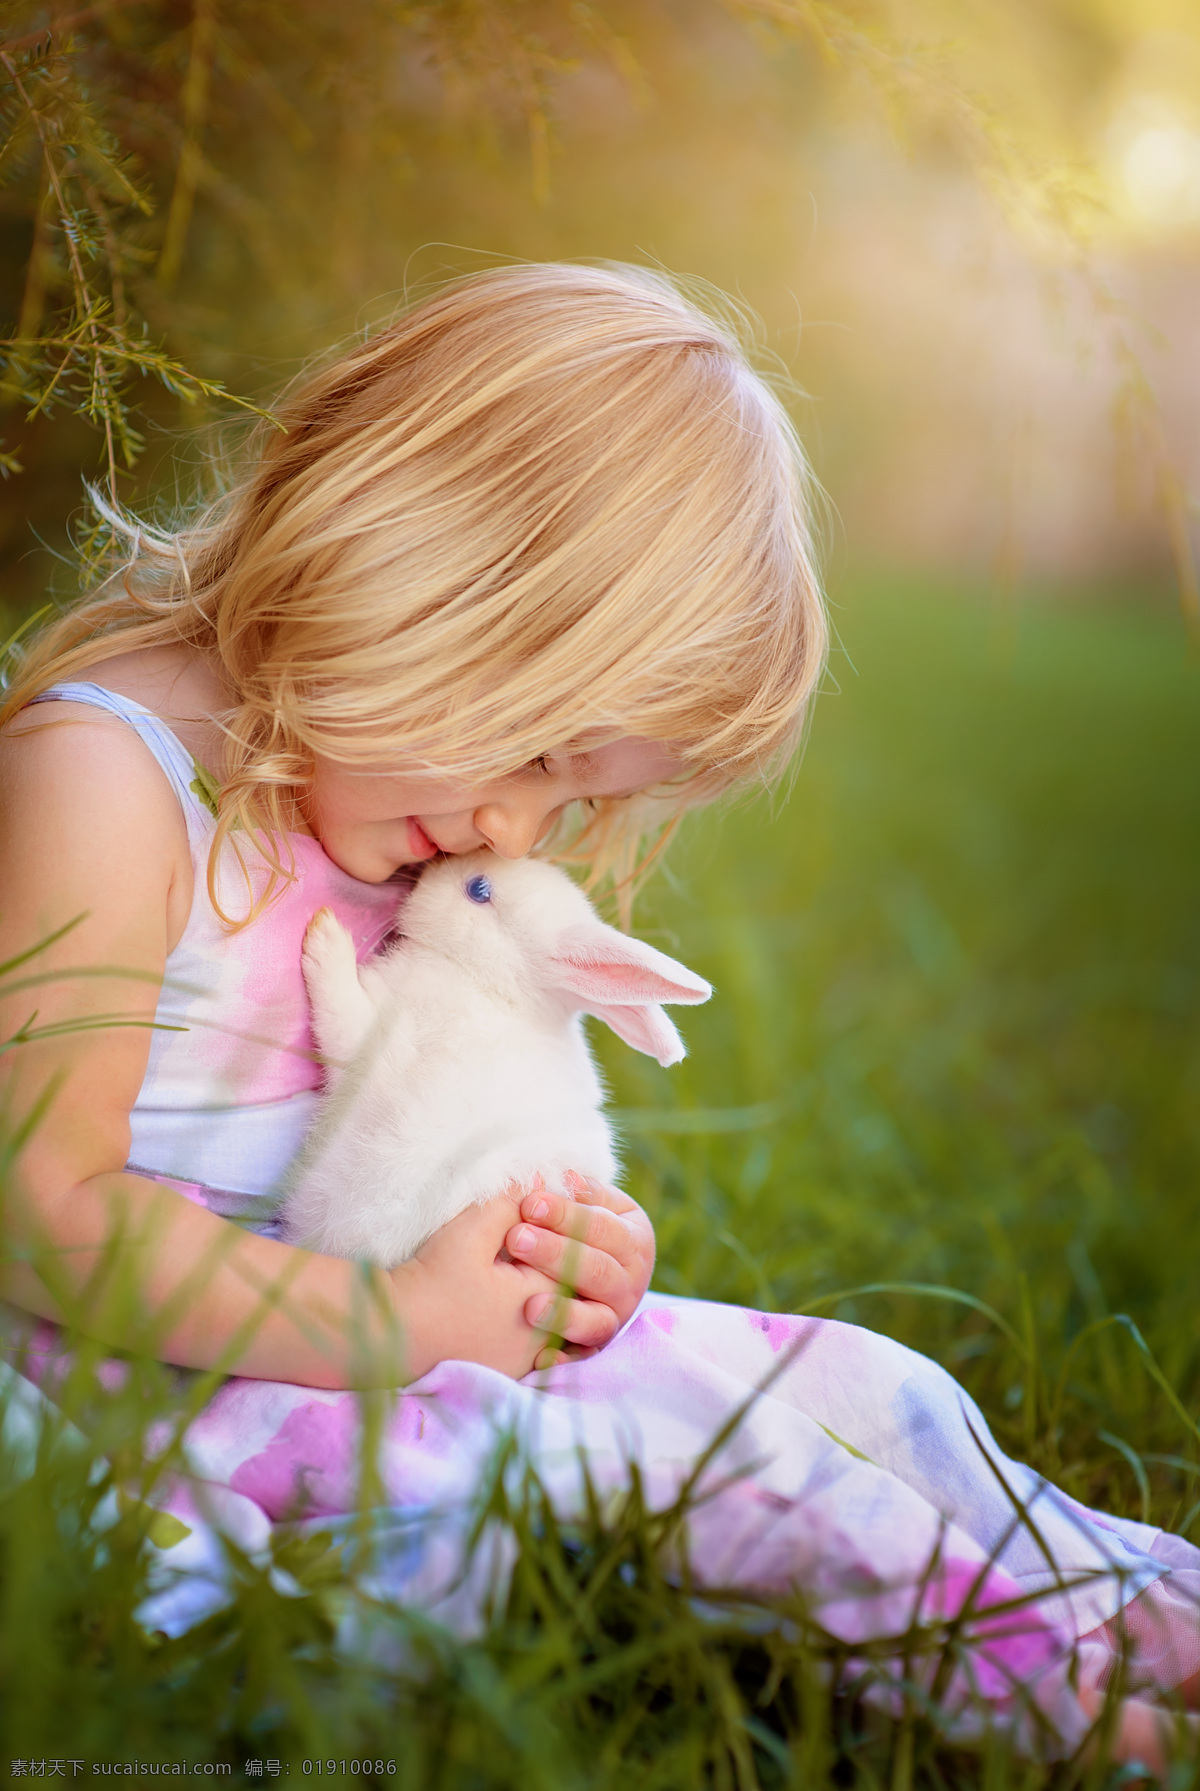 抱 小 兔子 小女孩 抱着兔子 坐在 草地 上 儿童 幼儿 外国儿童 小孩子 儿童幼儿 儿童图片 人物图片